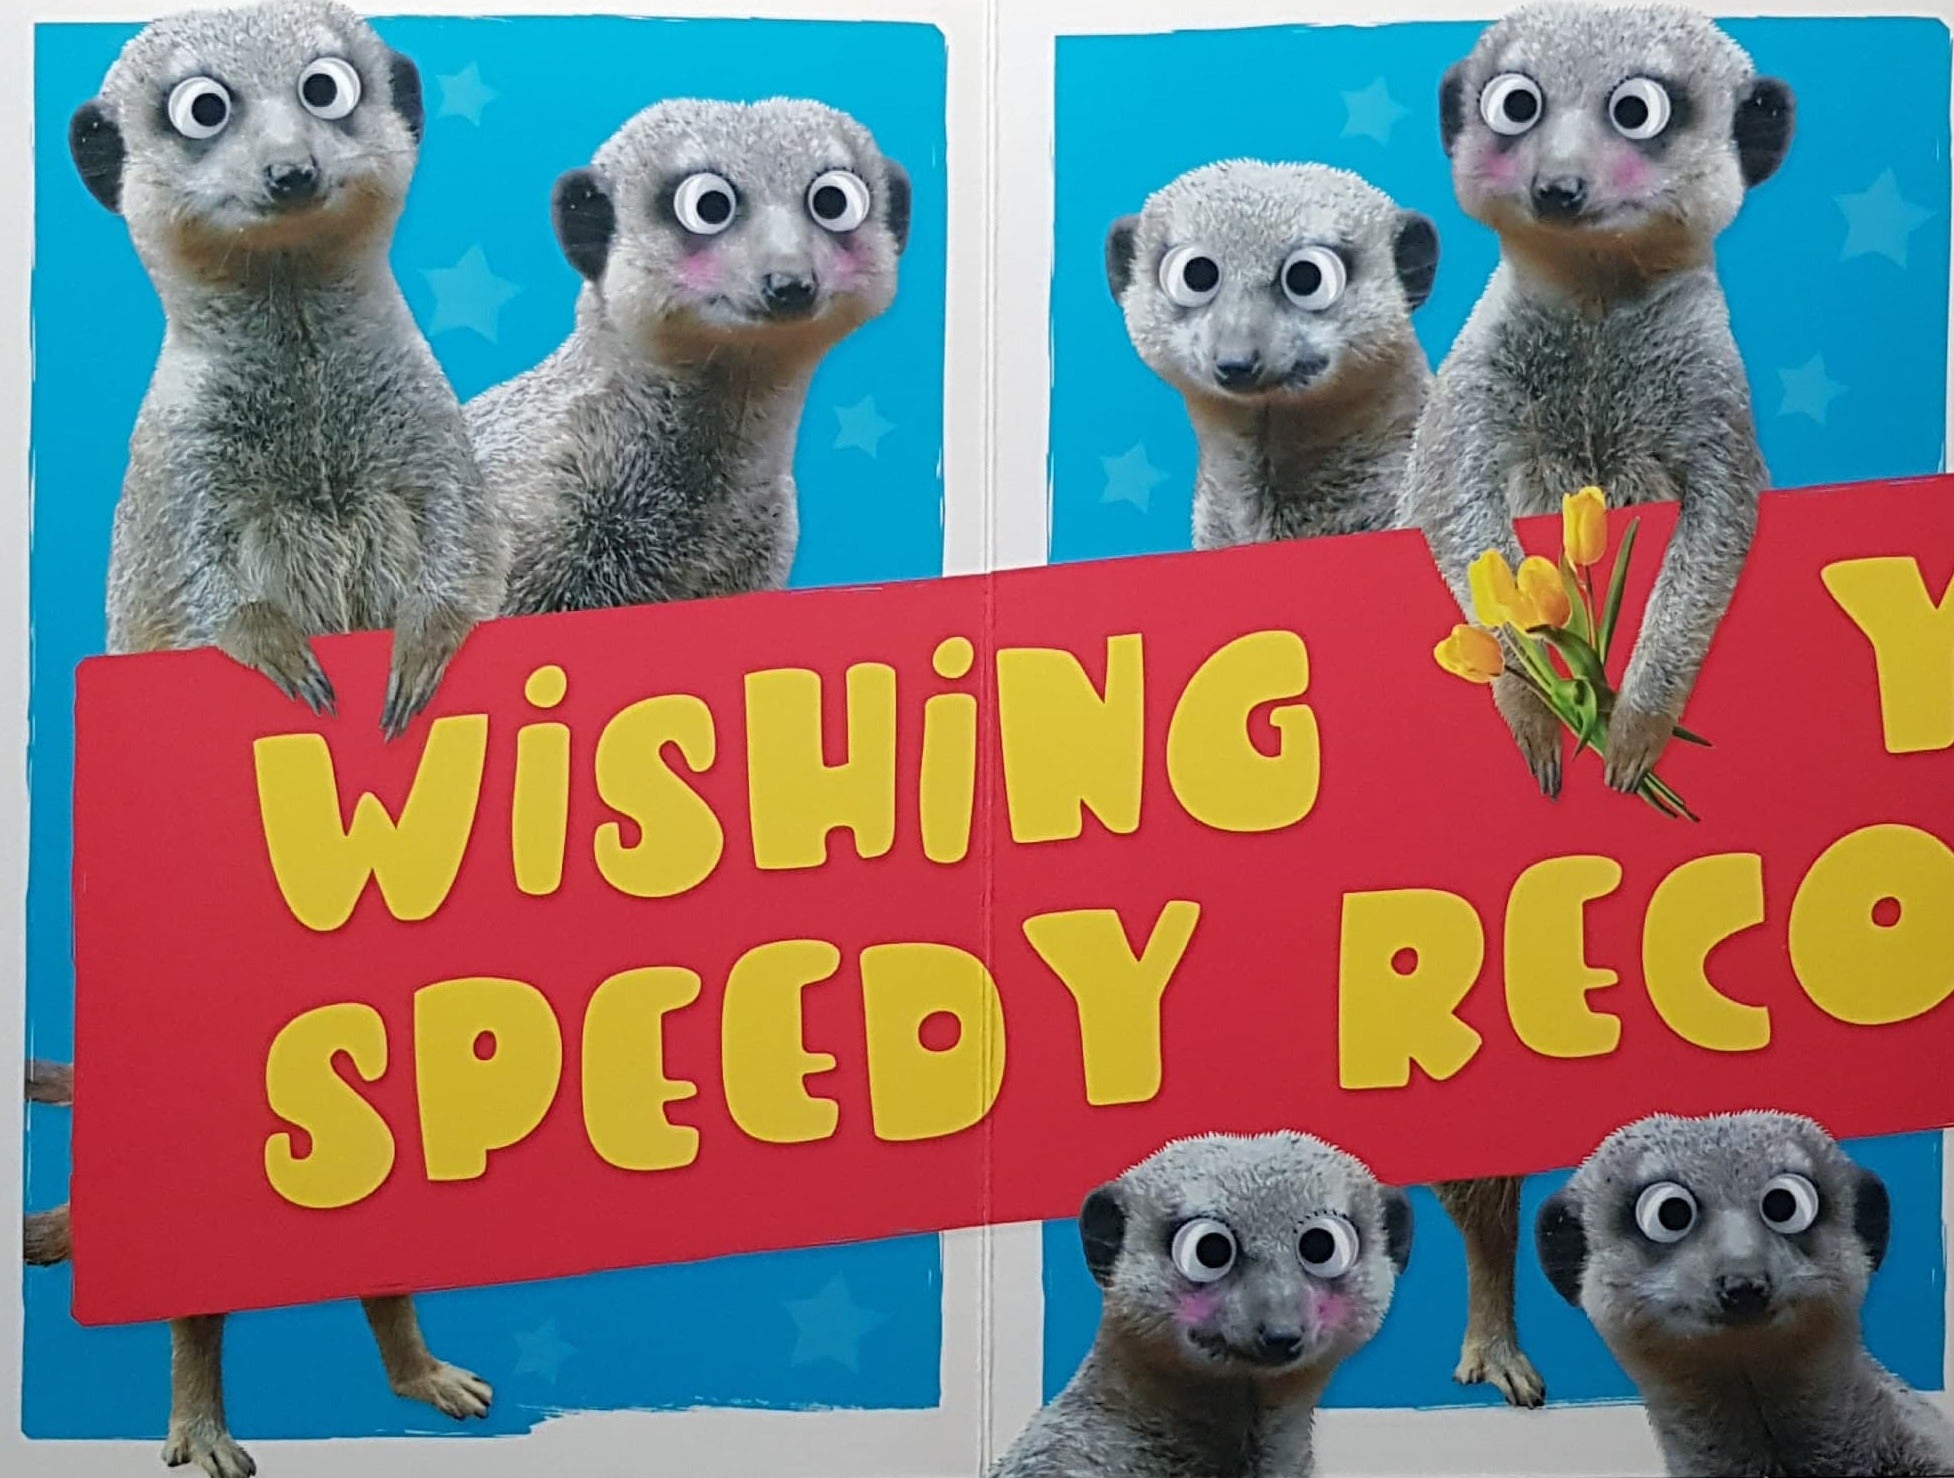 Get Well Card - Three Cute Meerkats & Red Stars